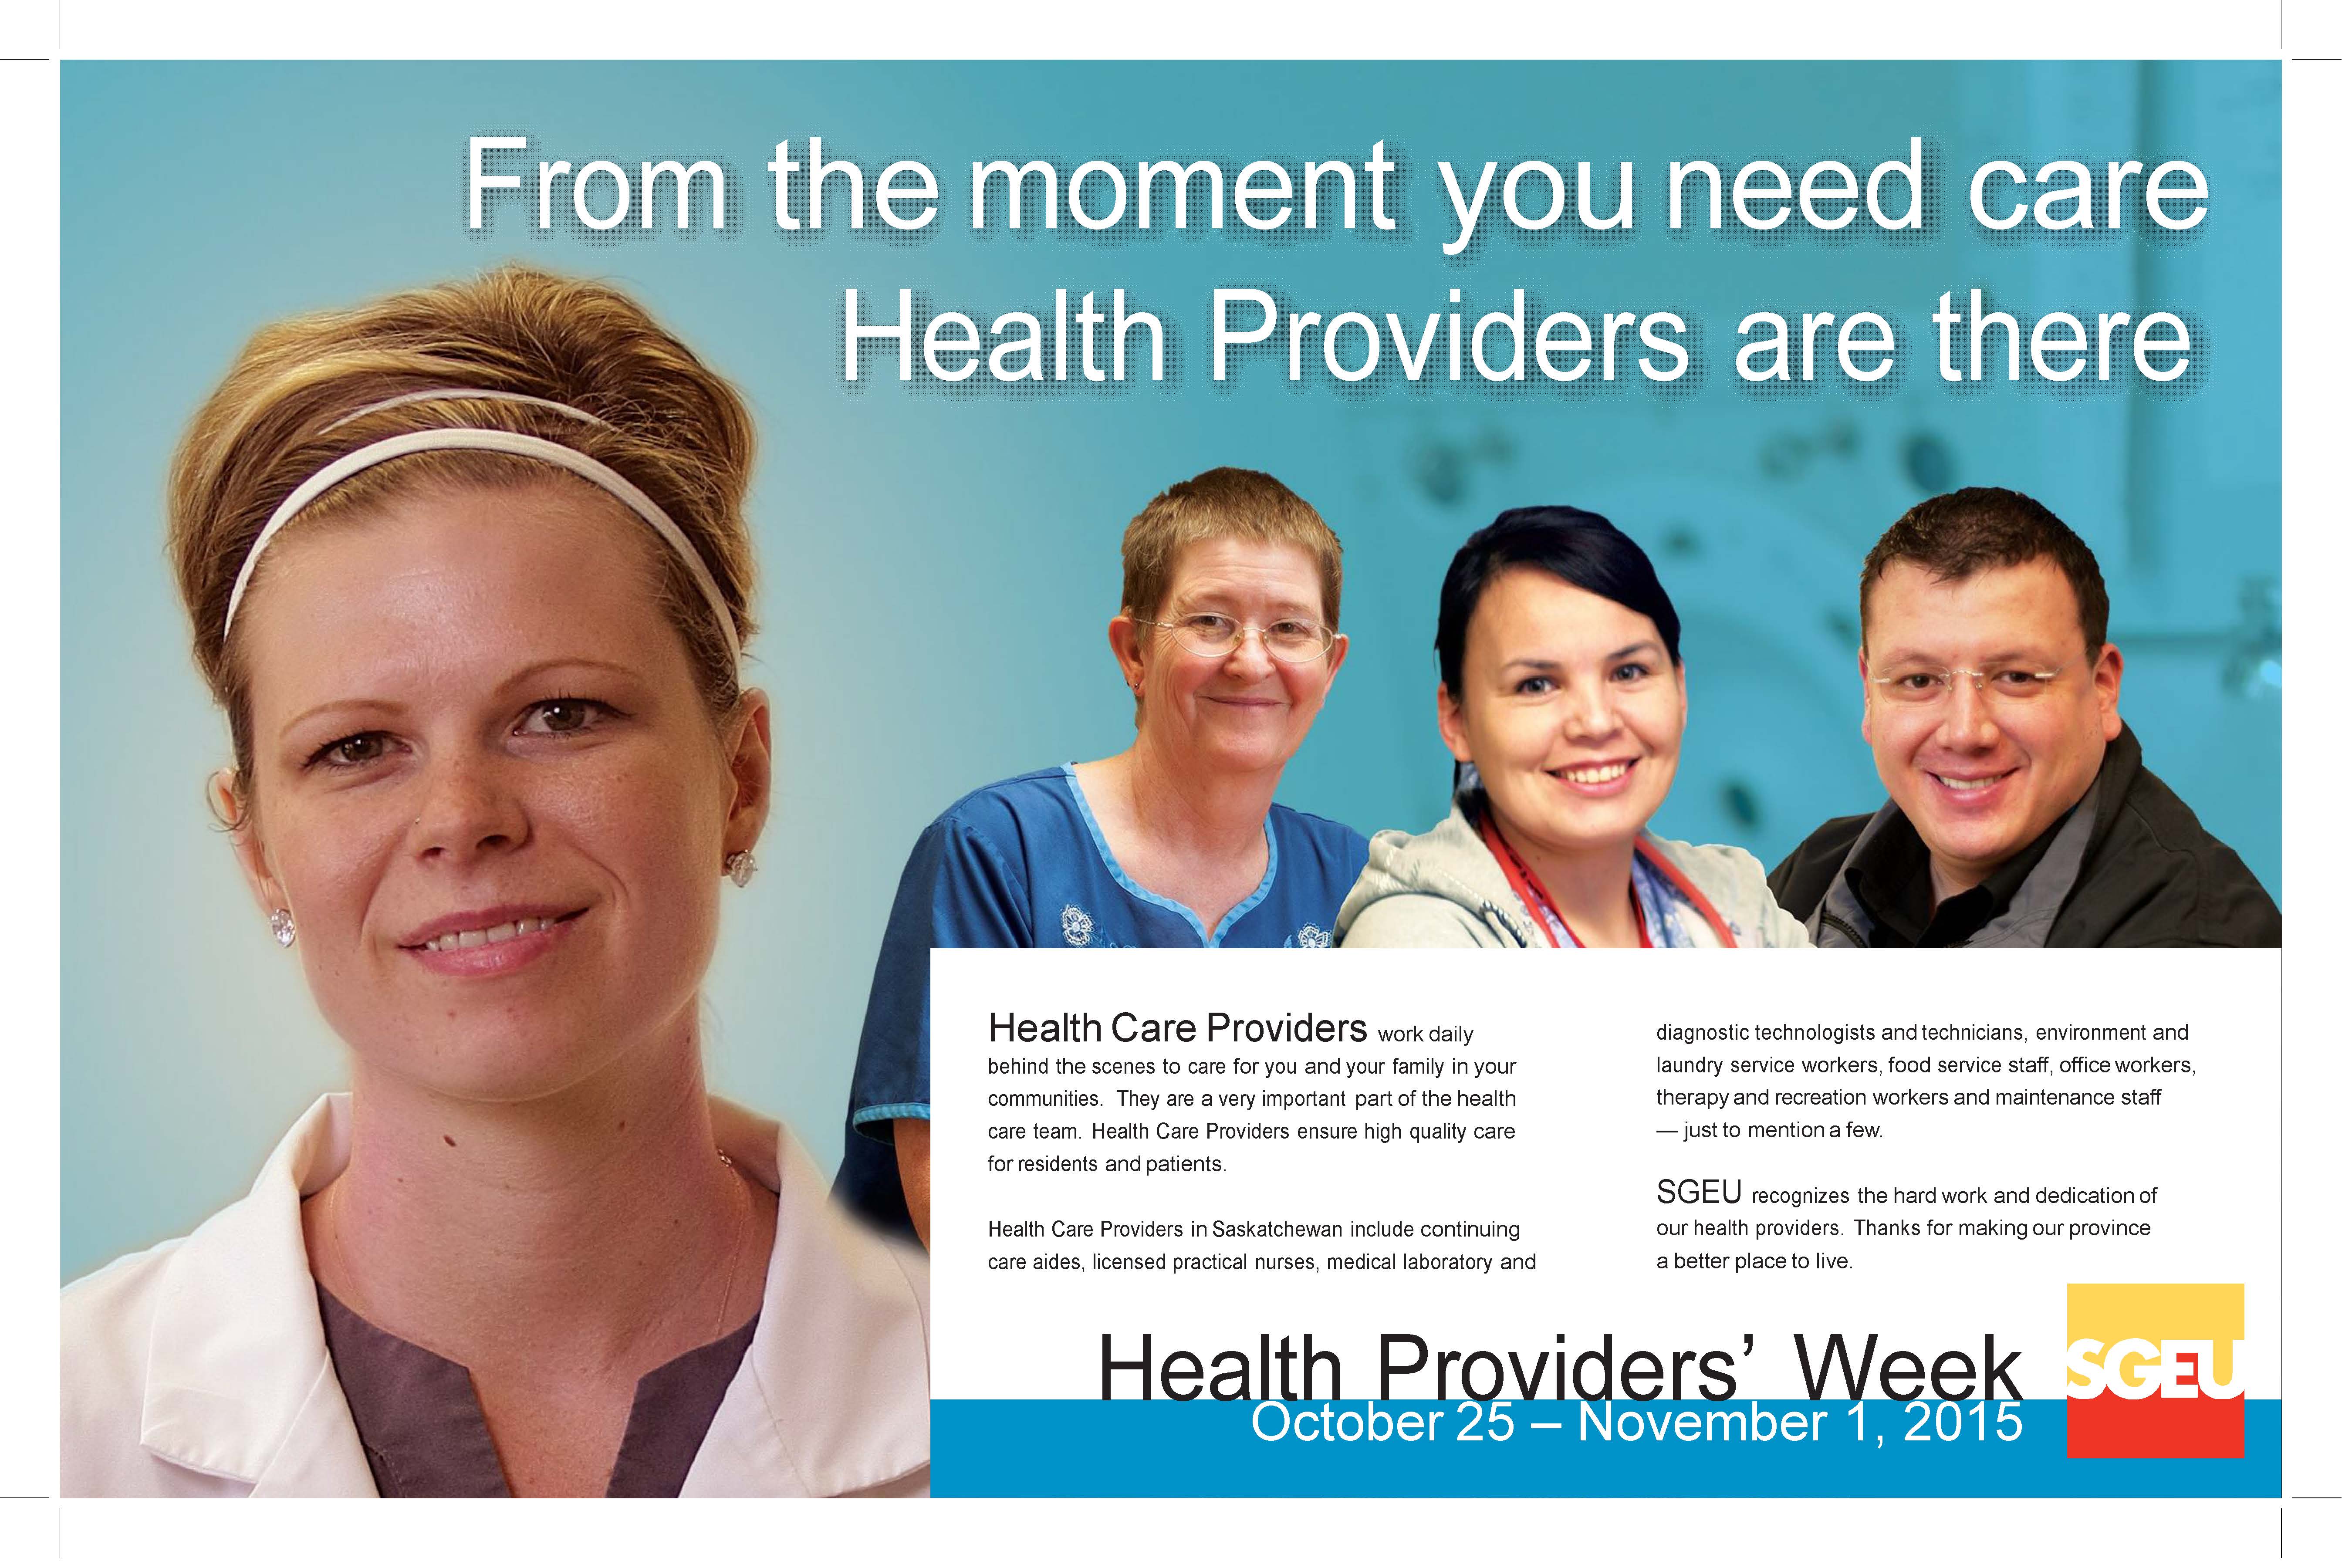 Health Providers' Week October 25 - November 1